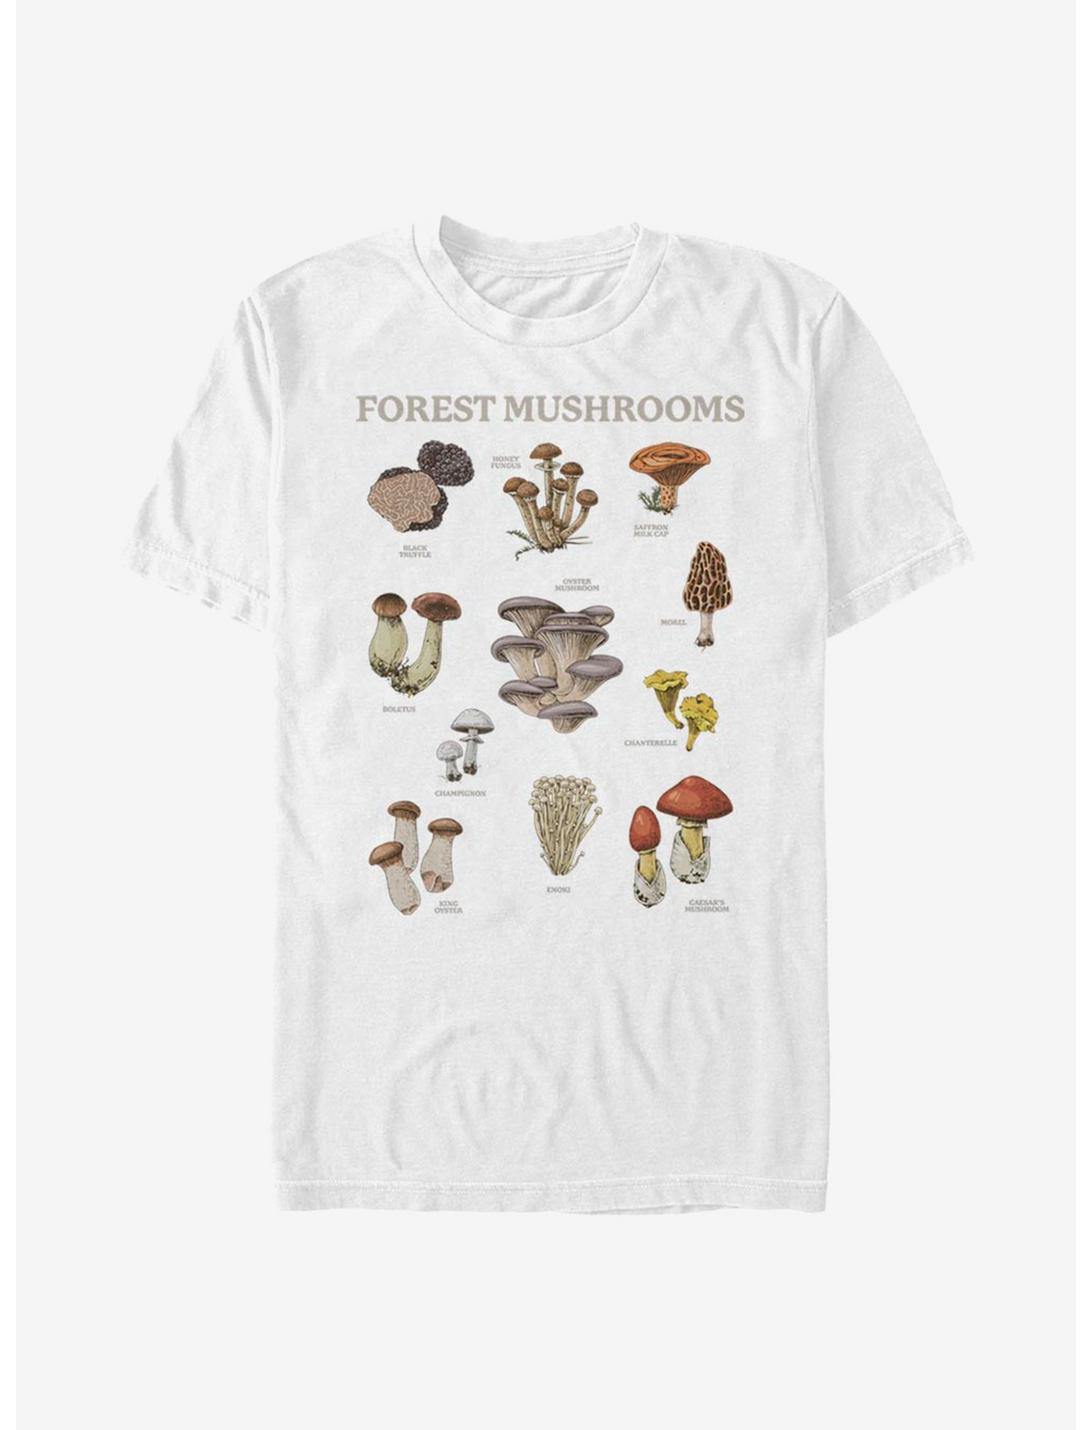 Merry Mushroom Forest Friends Unisex Tee